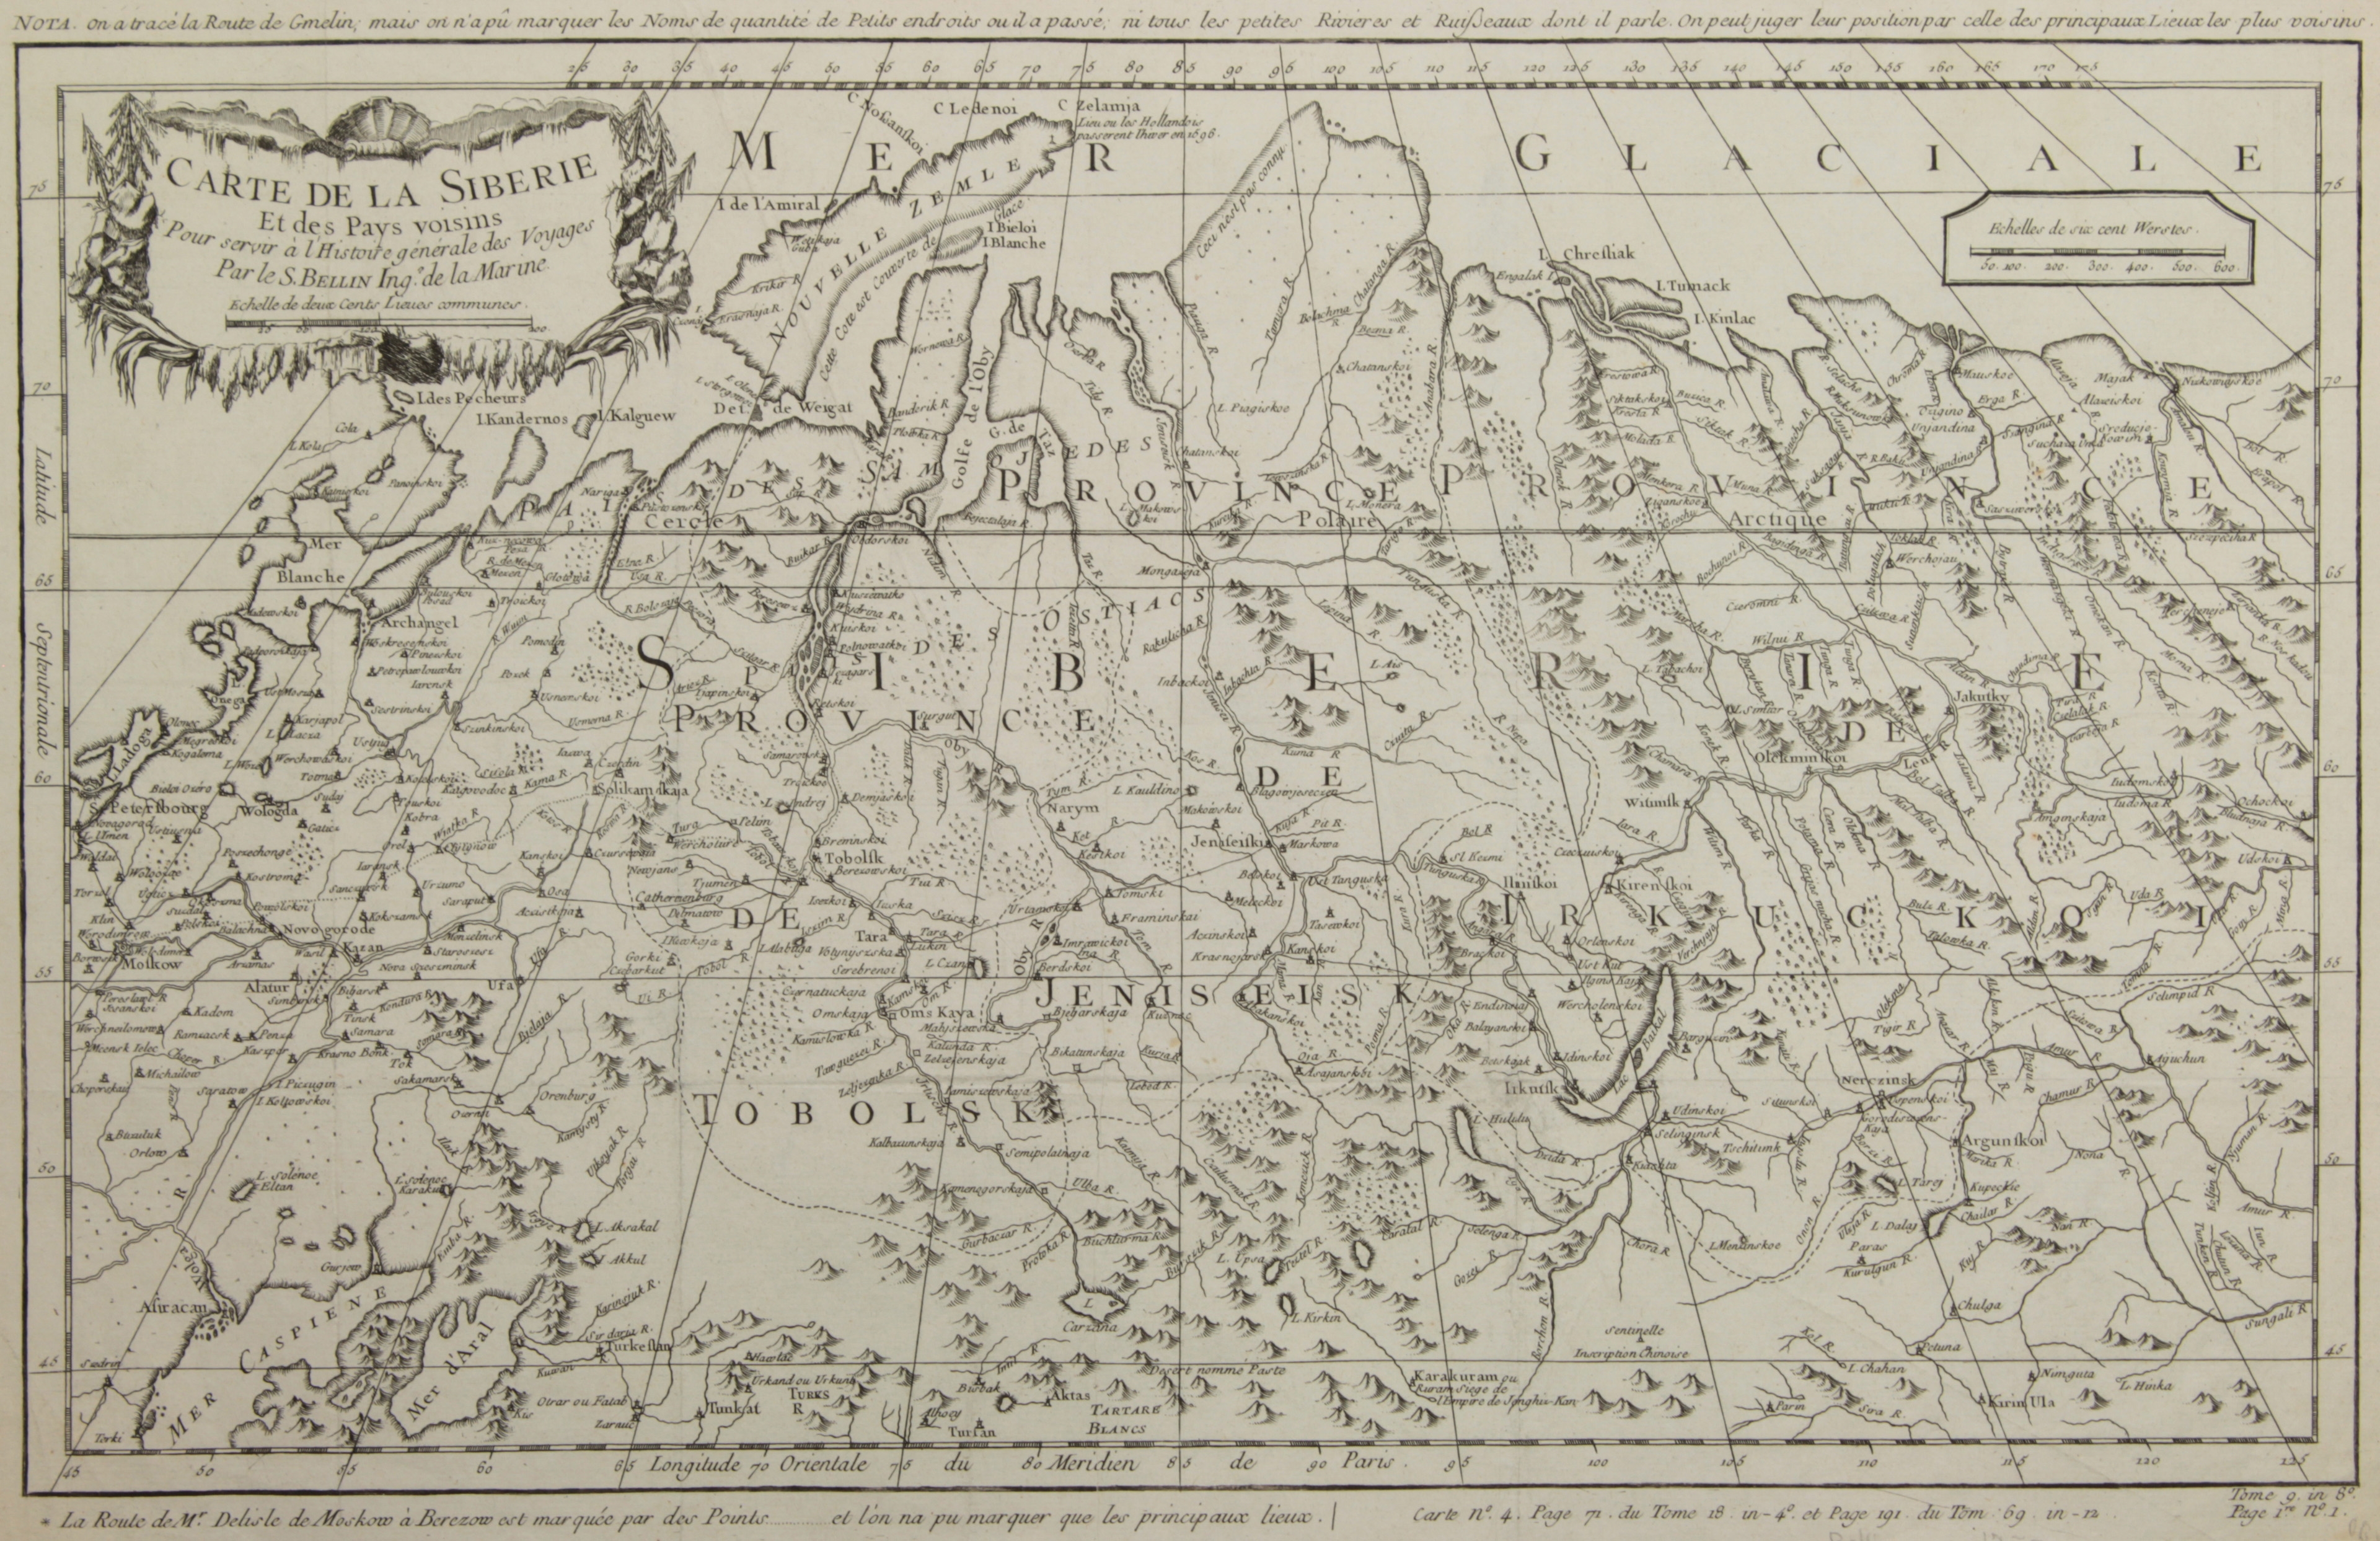 Carte De La Siberie Et des Pays voisins pour servir a l'Histoire general des Voyages by Jacques Nicolas Bellin, 1754